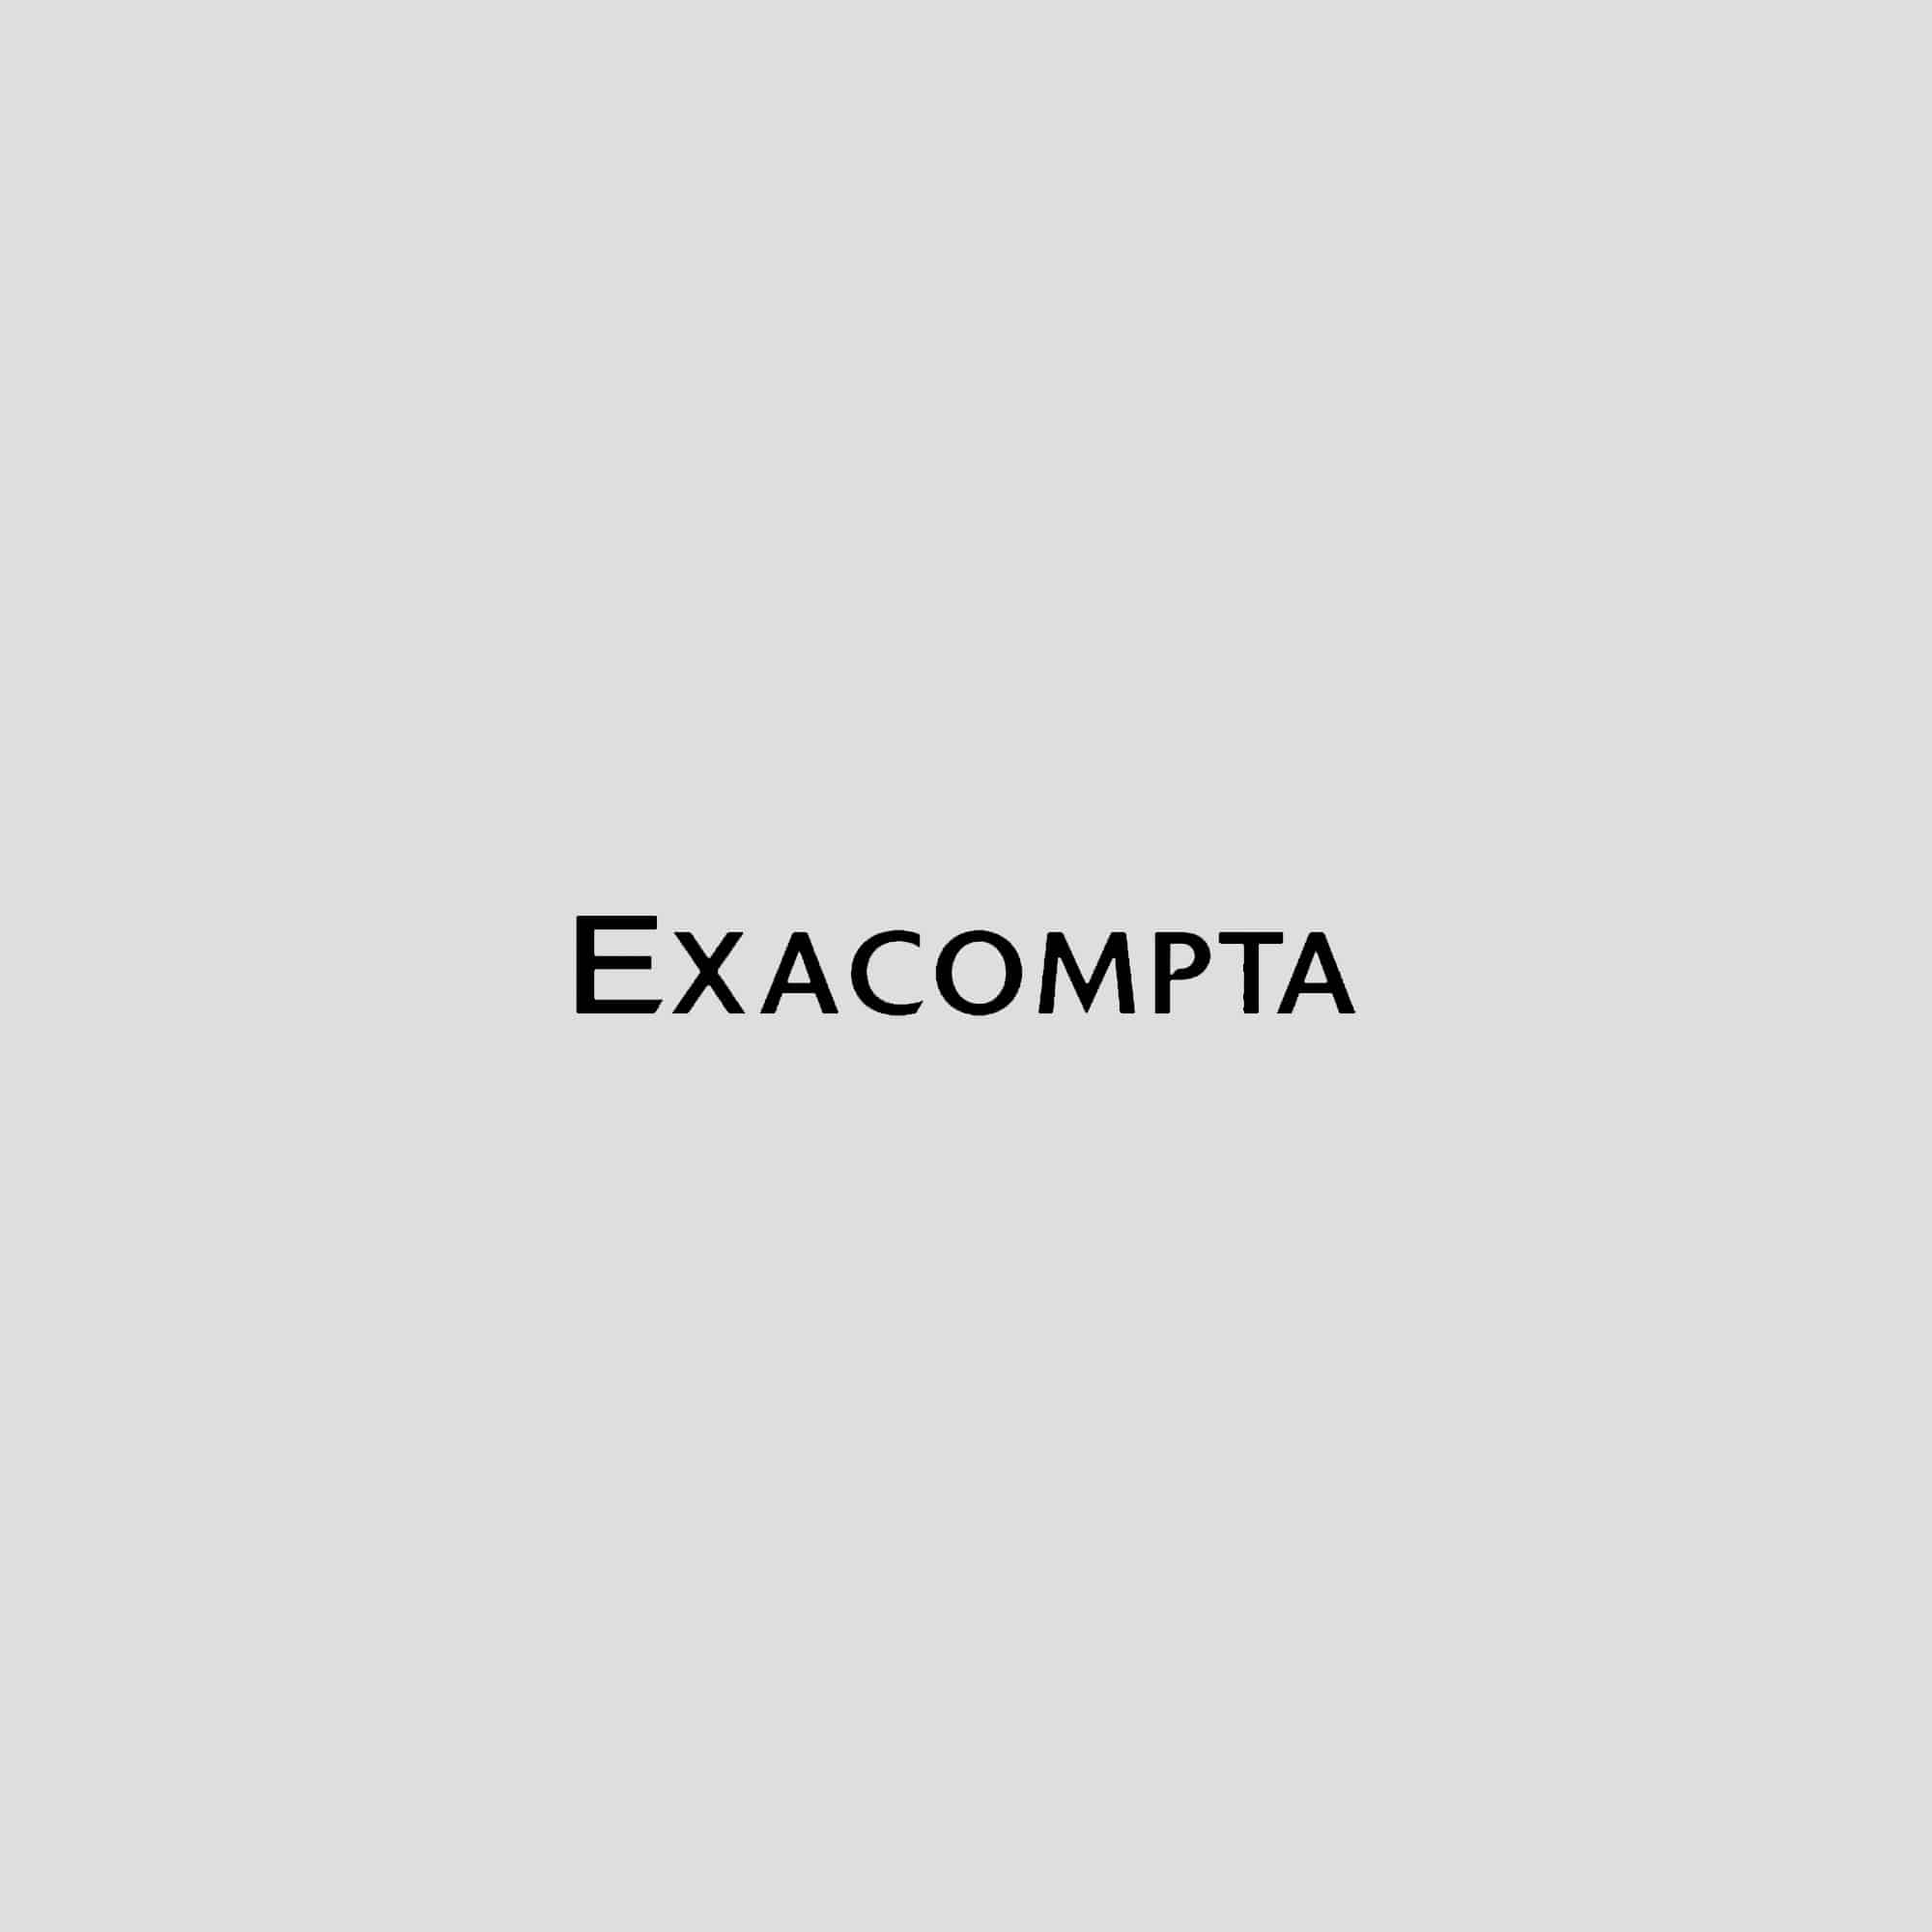 EXACOMPTA